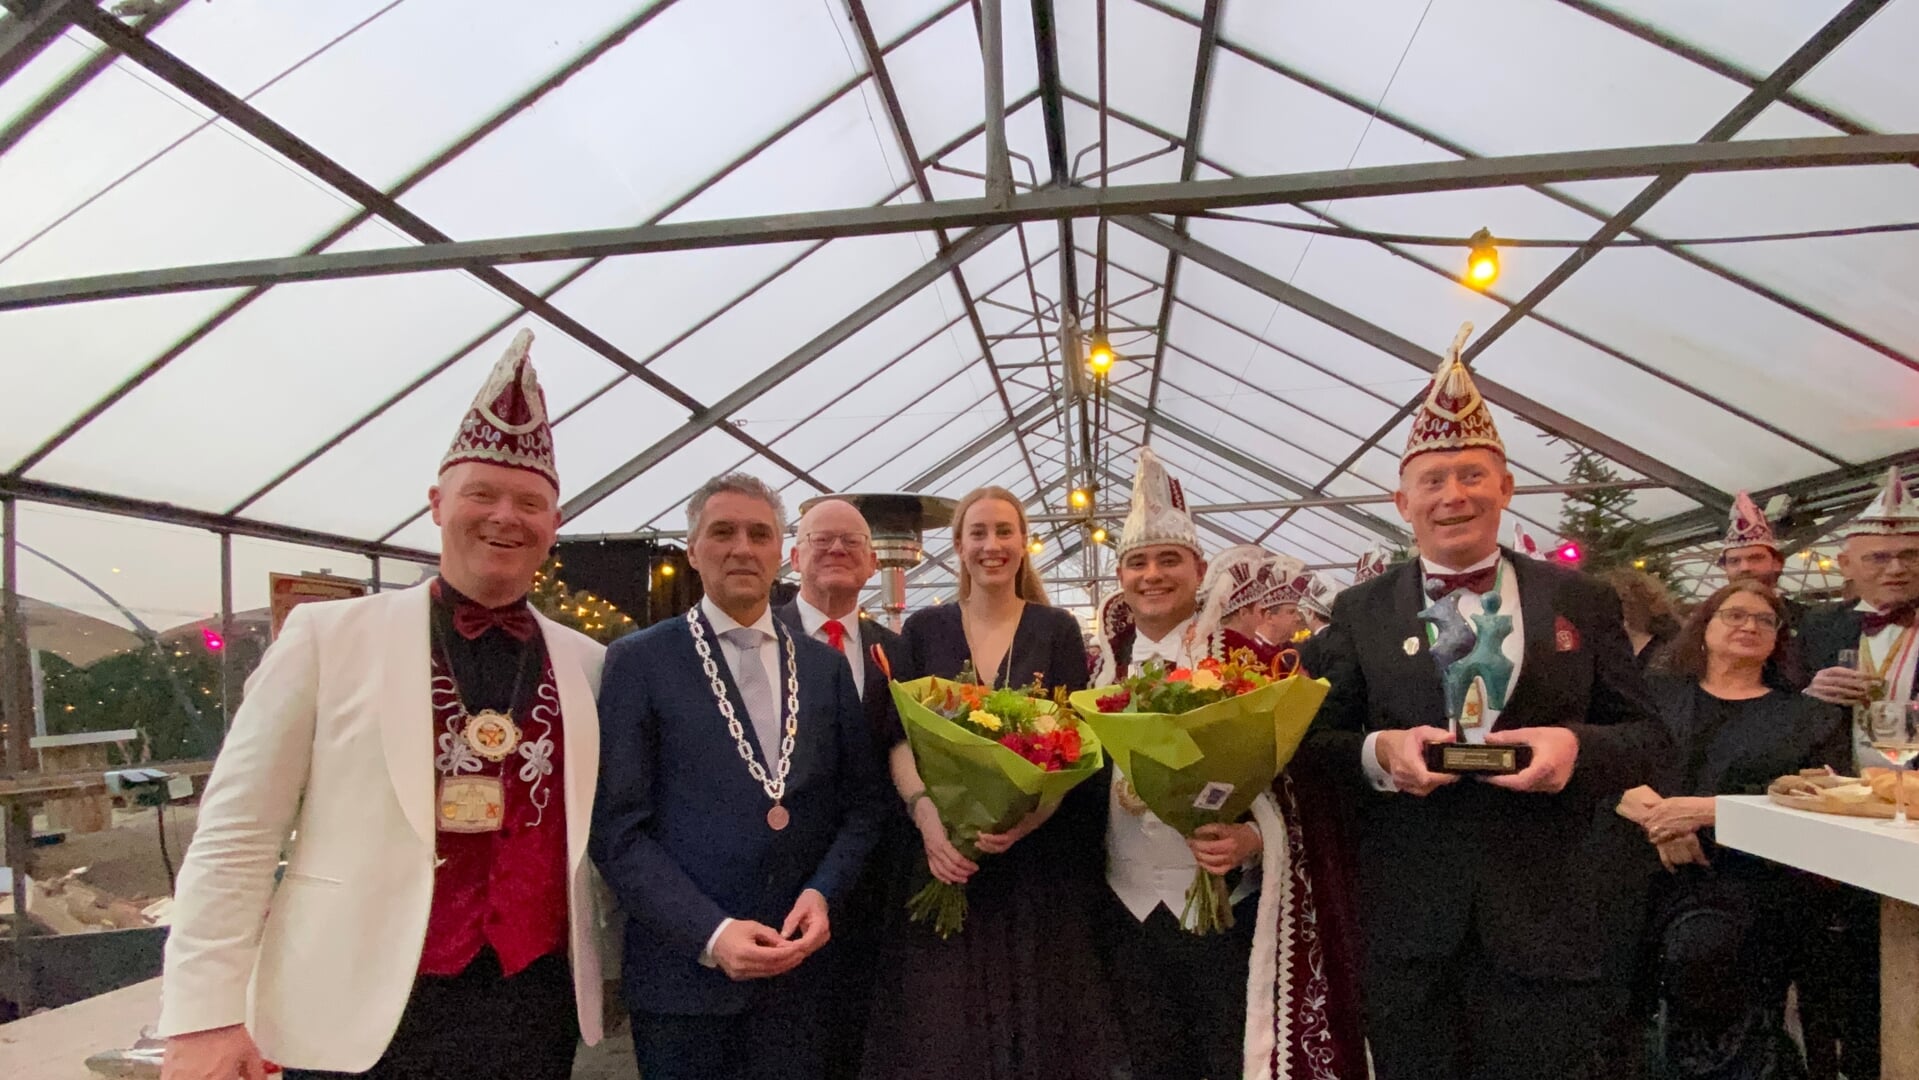 Het trotse gezelschap met de Ganapja. Vanaf links vorst Geert Spikmans, burgemeester Hans Teunissen, wethouder Frank Pubben, prinses Nikki, prins Joris en voorzitter Marco Seelen.